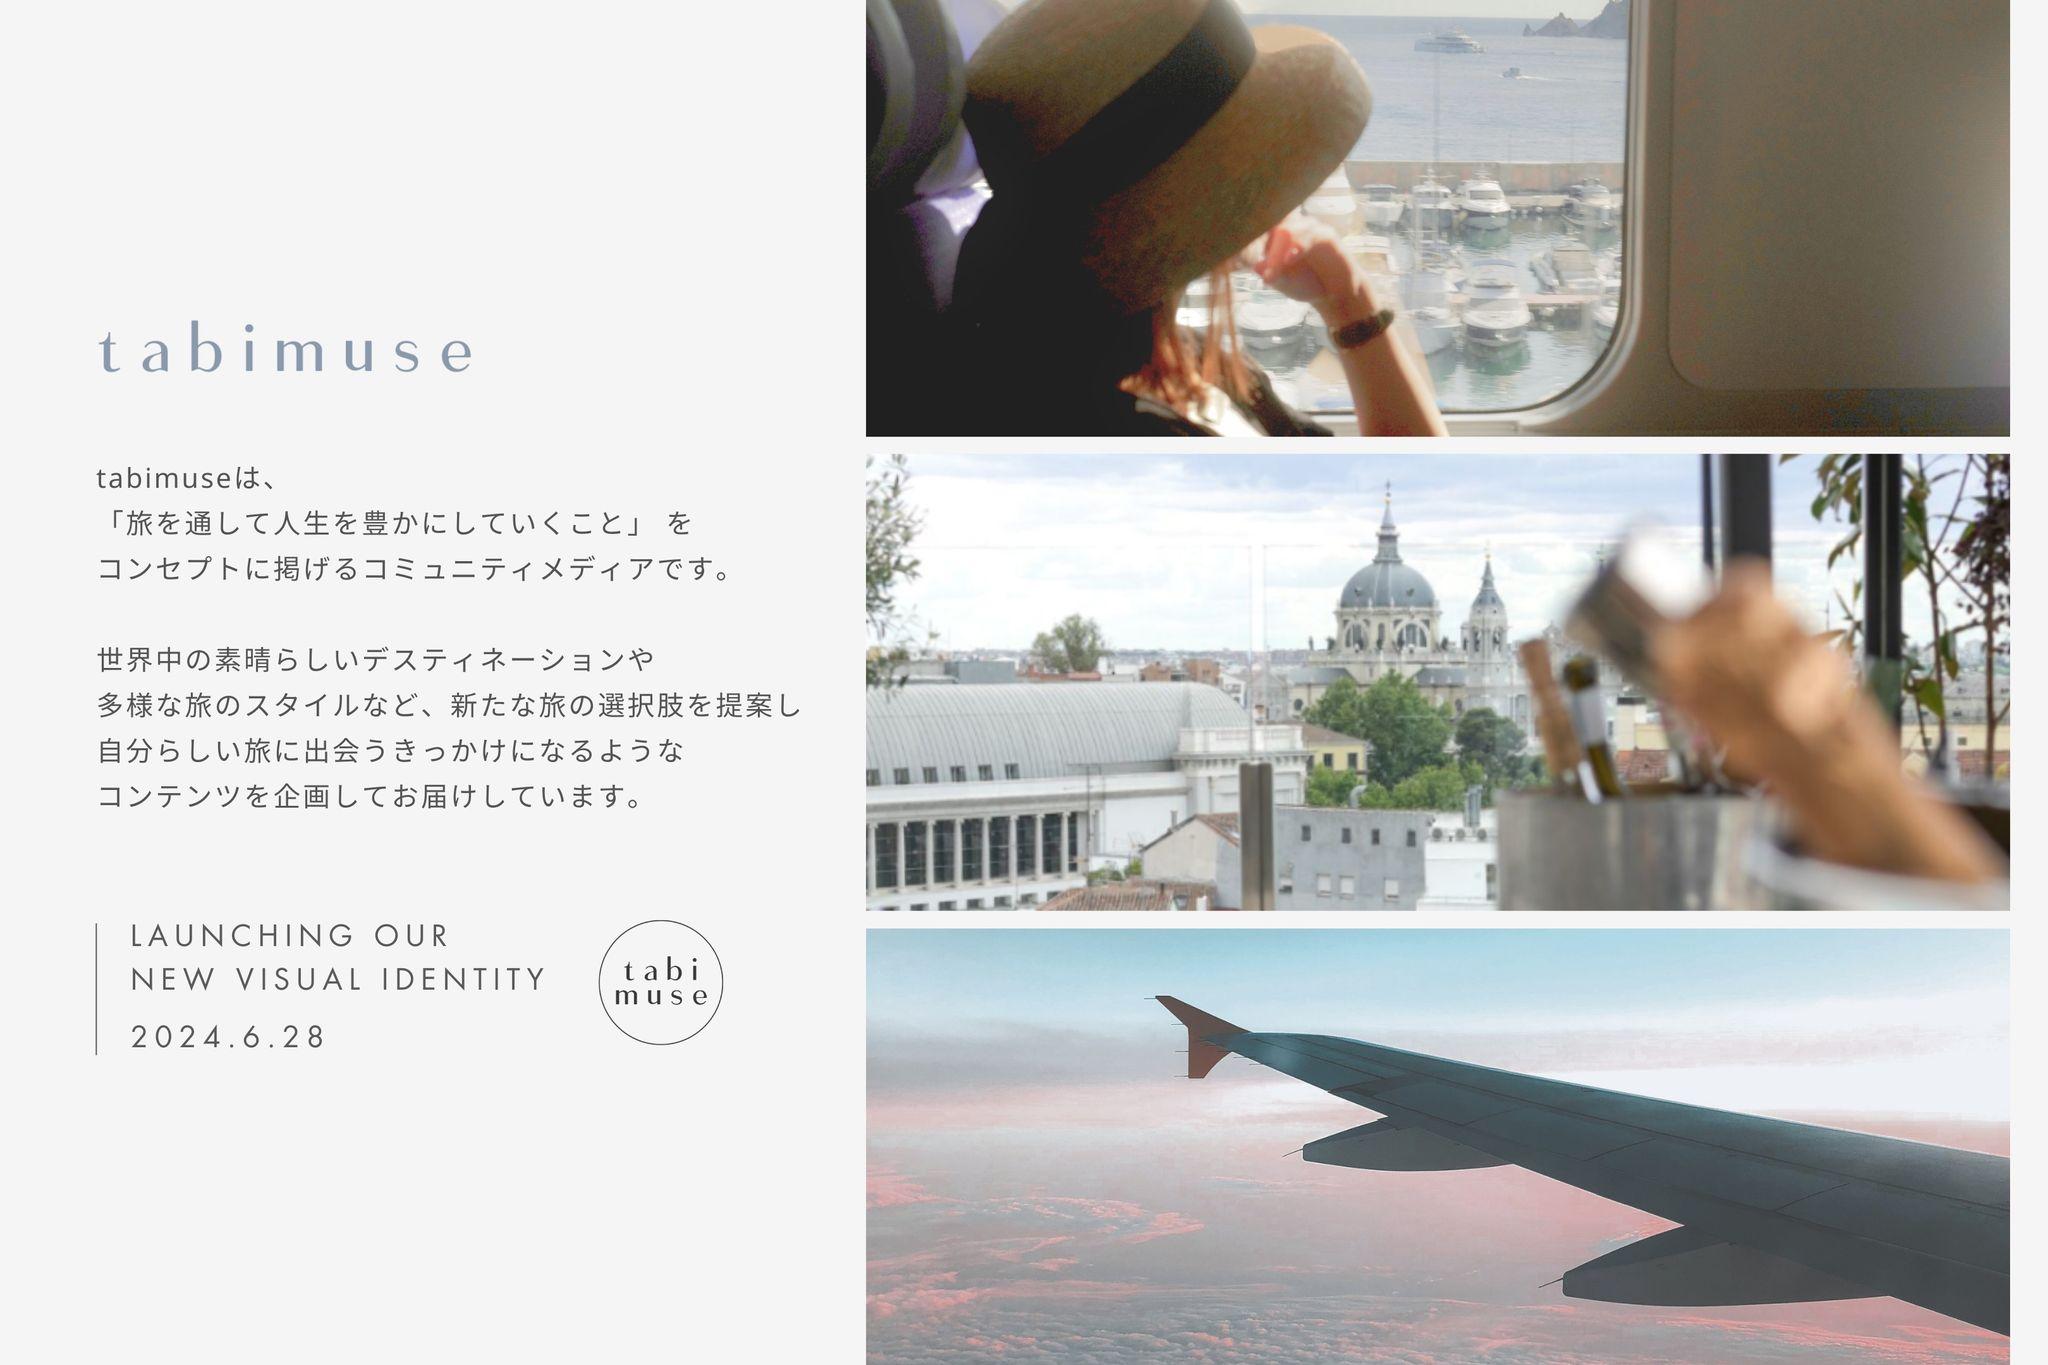 ミレニアル世代向け旅行コミュニティメディア tabimuse“旅を通して人生を豊かにする”というブランドコンセプトを定義し、新VISUAL IDENTITYを公開